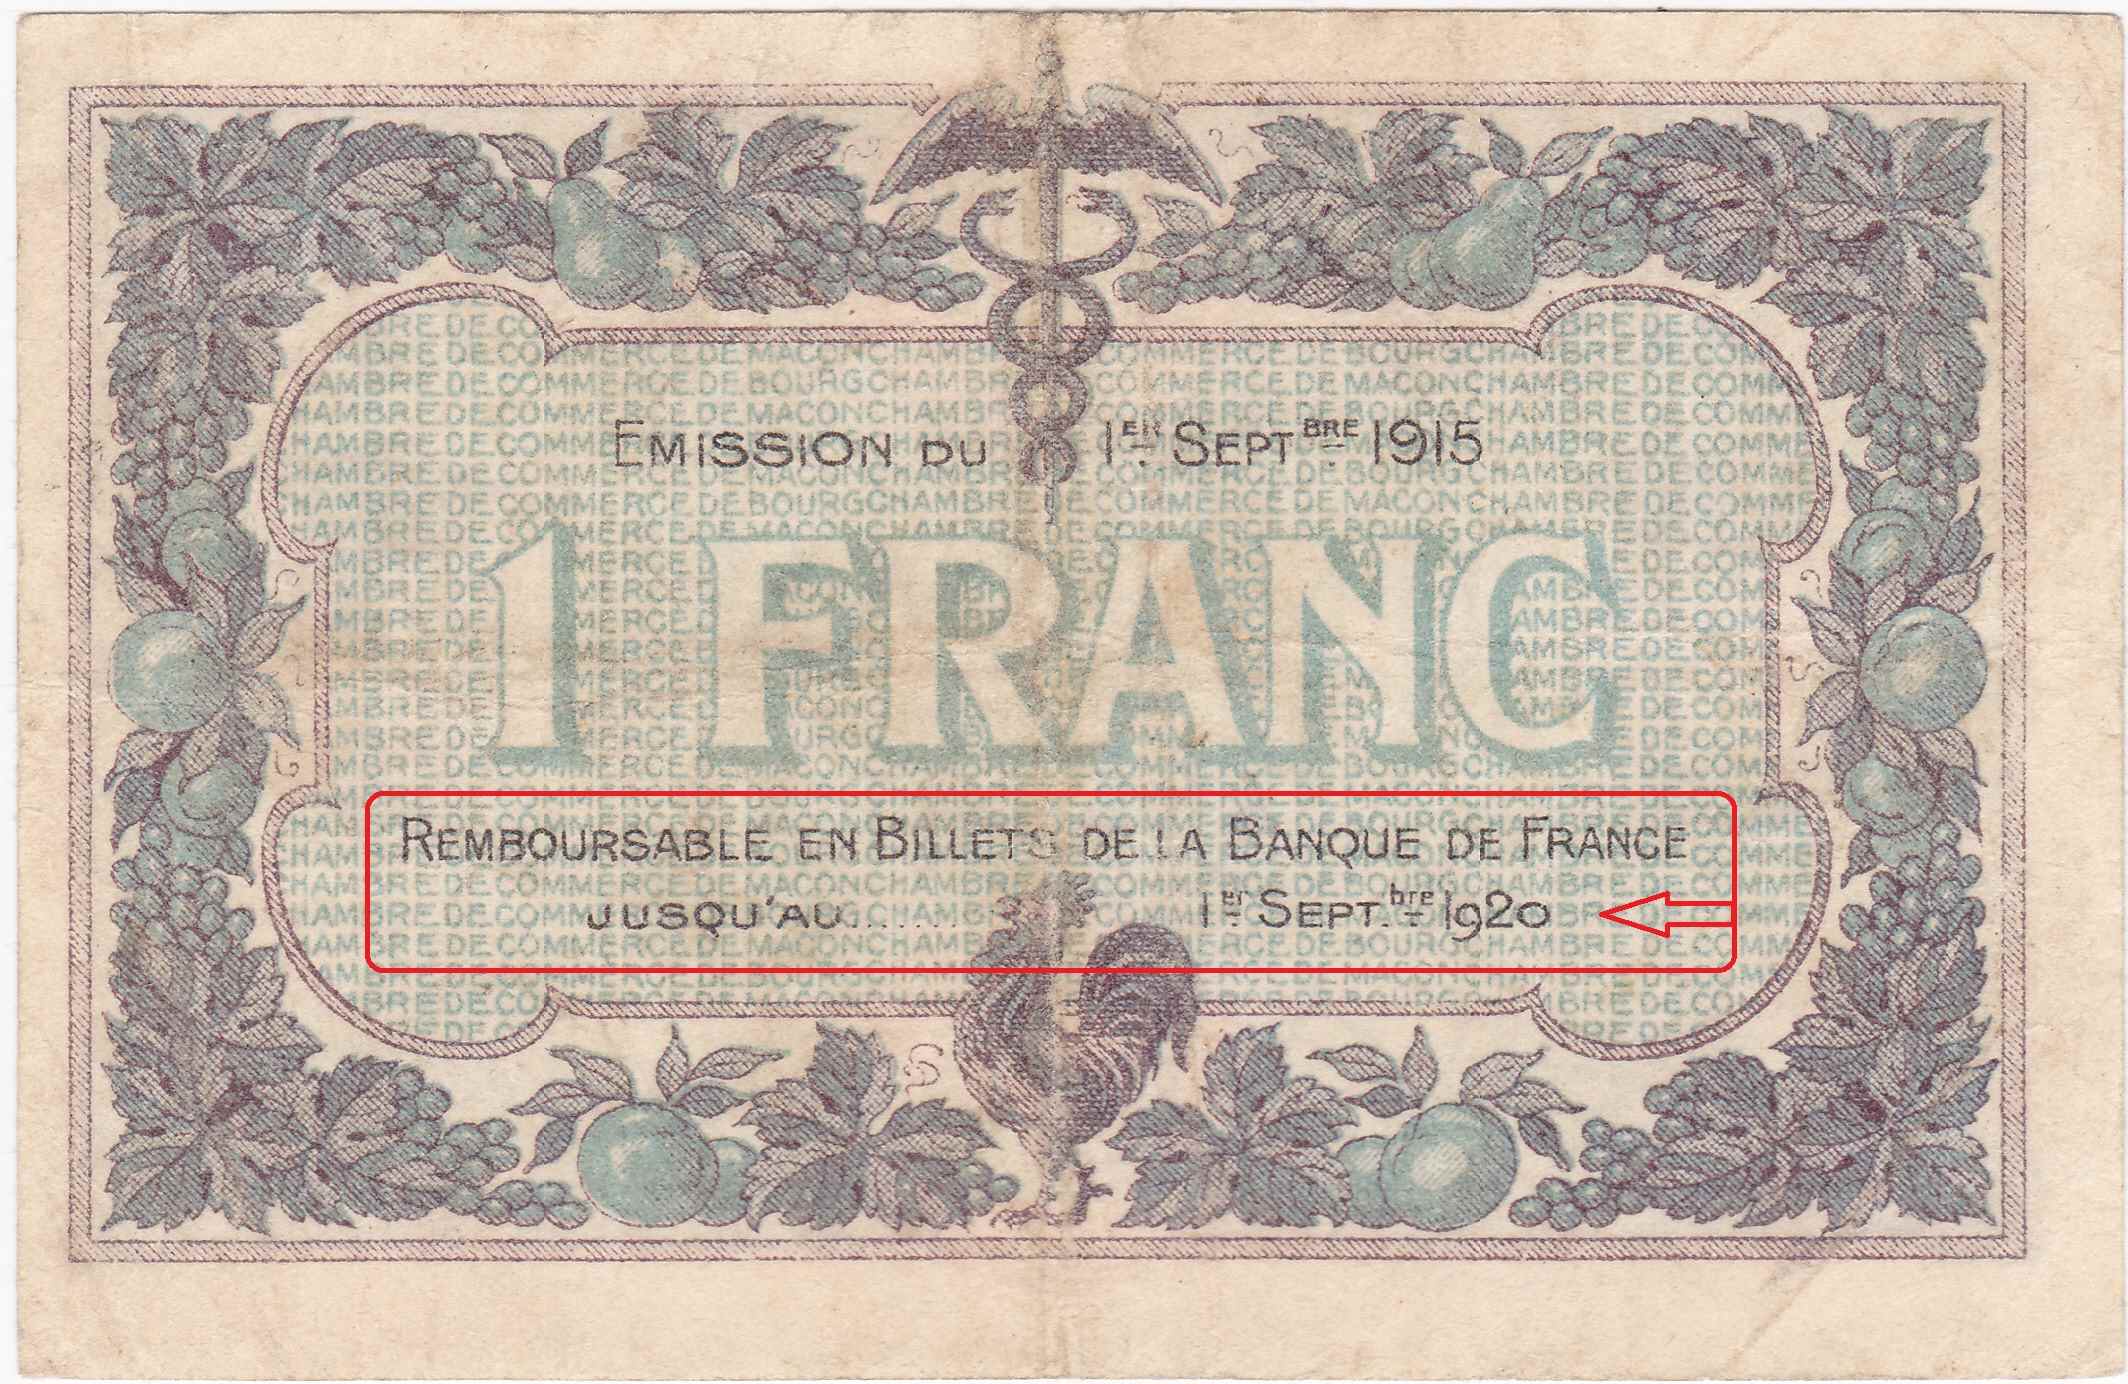 Les billets des Chambres de Commerce de Mâcon et de Bourg (1915-1926) – 12ème partie